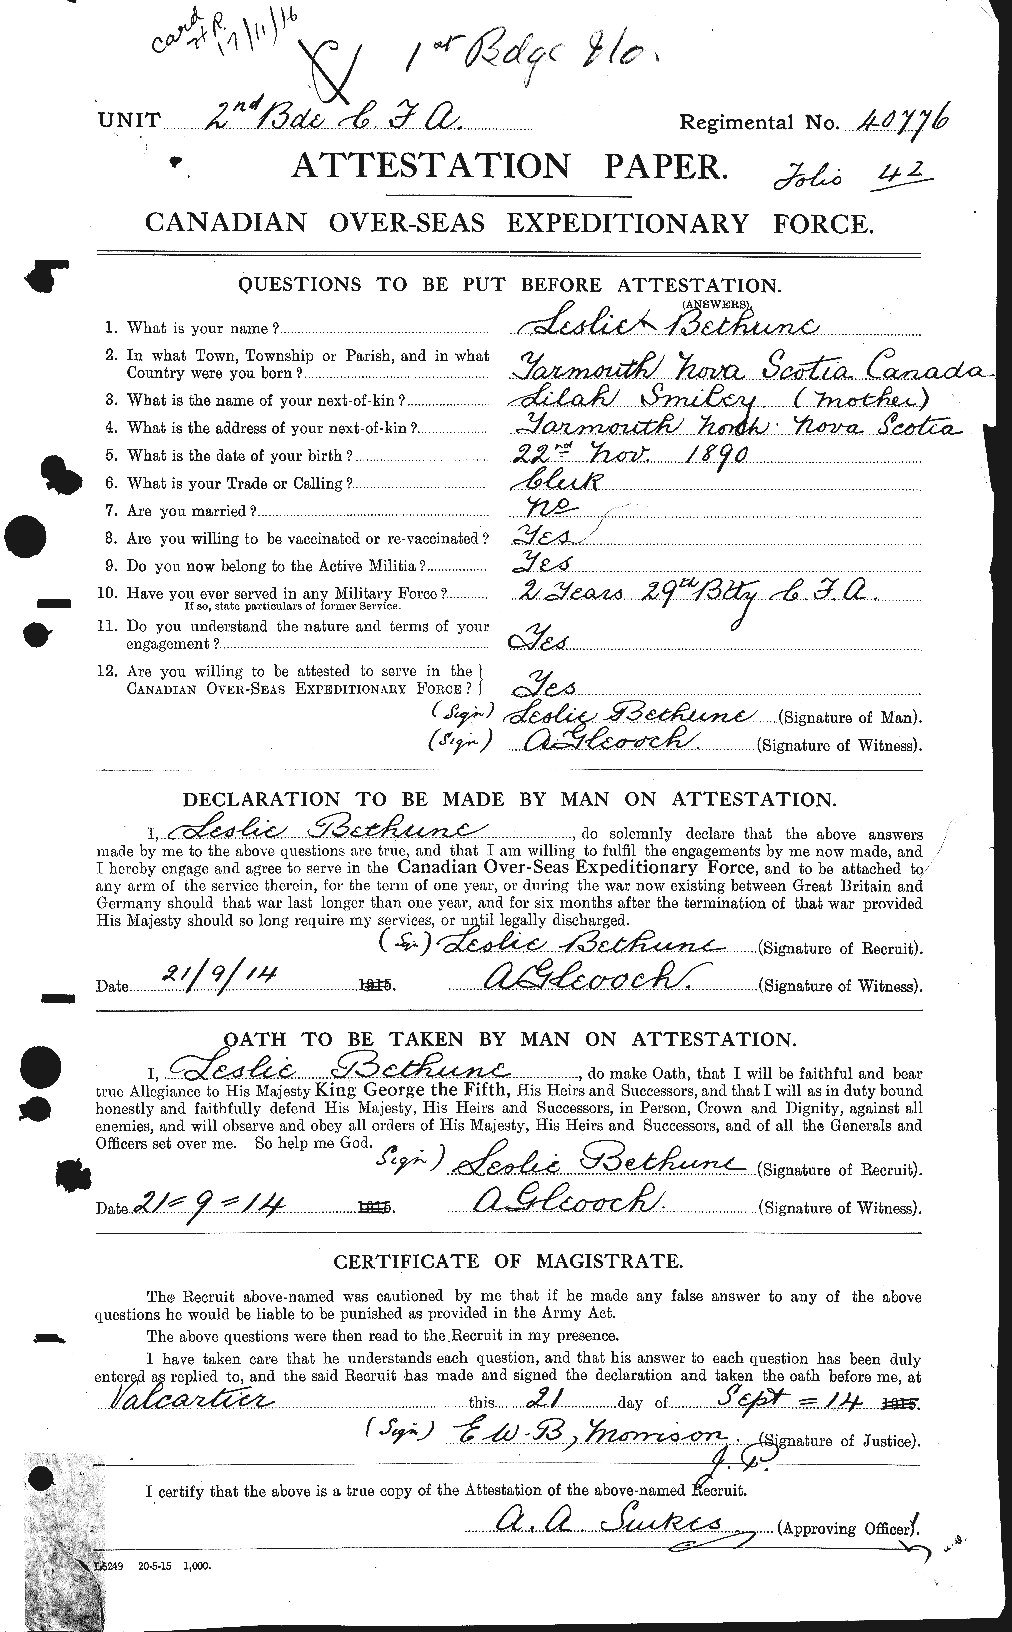 Dossiers du Personnel de la Première Guerre mondiale - CEC 237031a